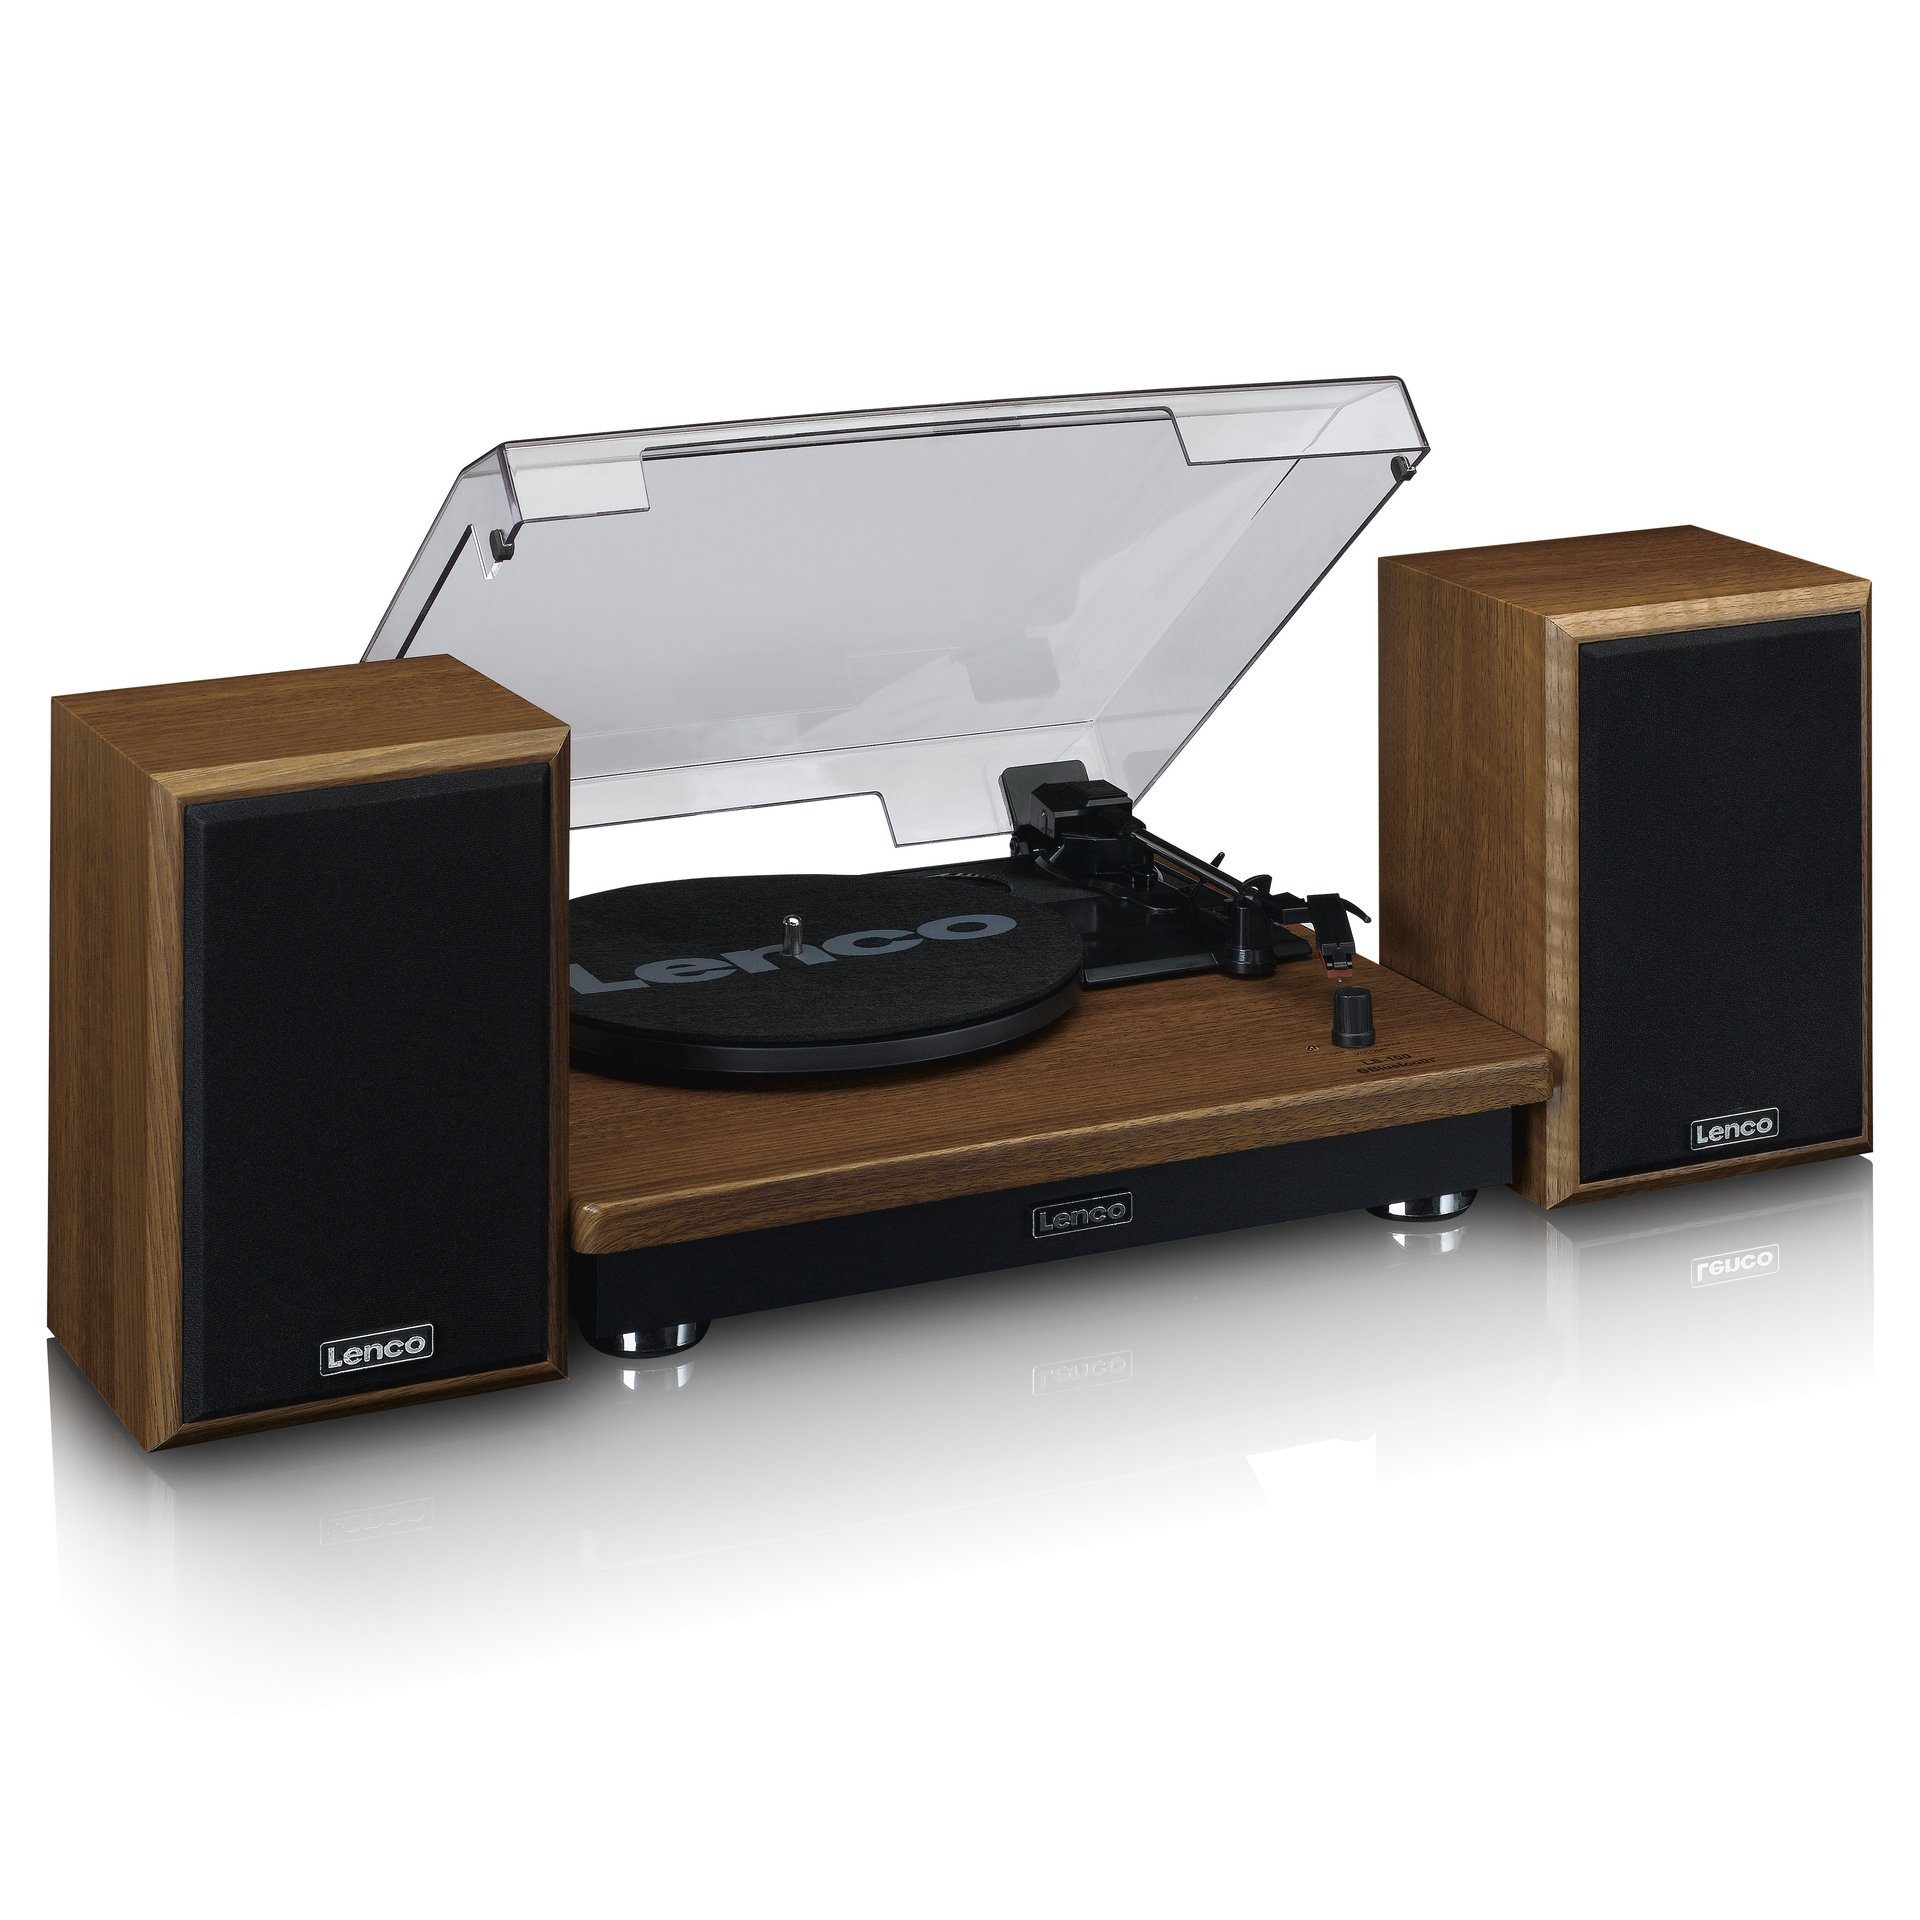 Lenco Plattenspieler mit Bluetooth und Plattenspieler externen Lautsprechern 2 (Riemenantrieb) Holz